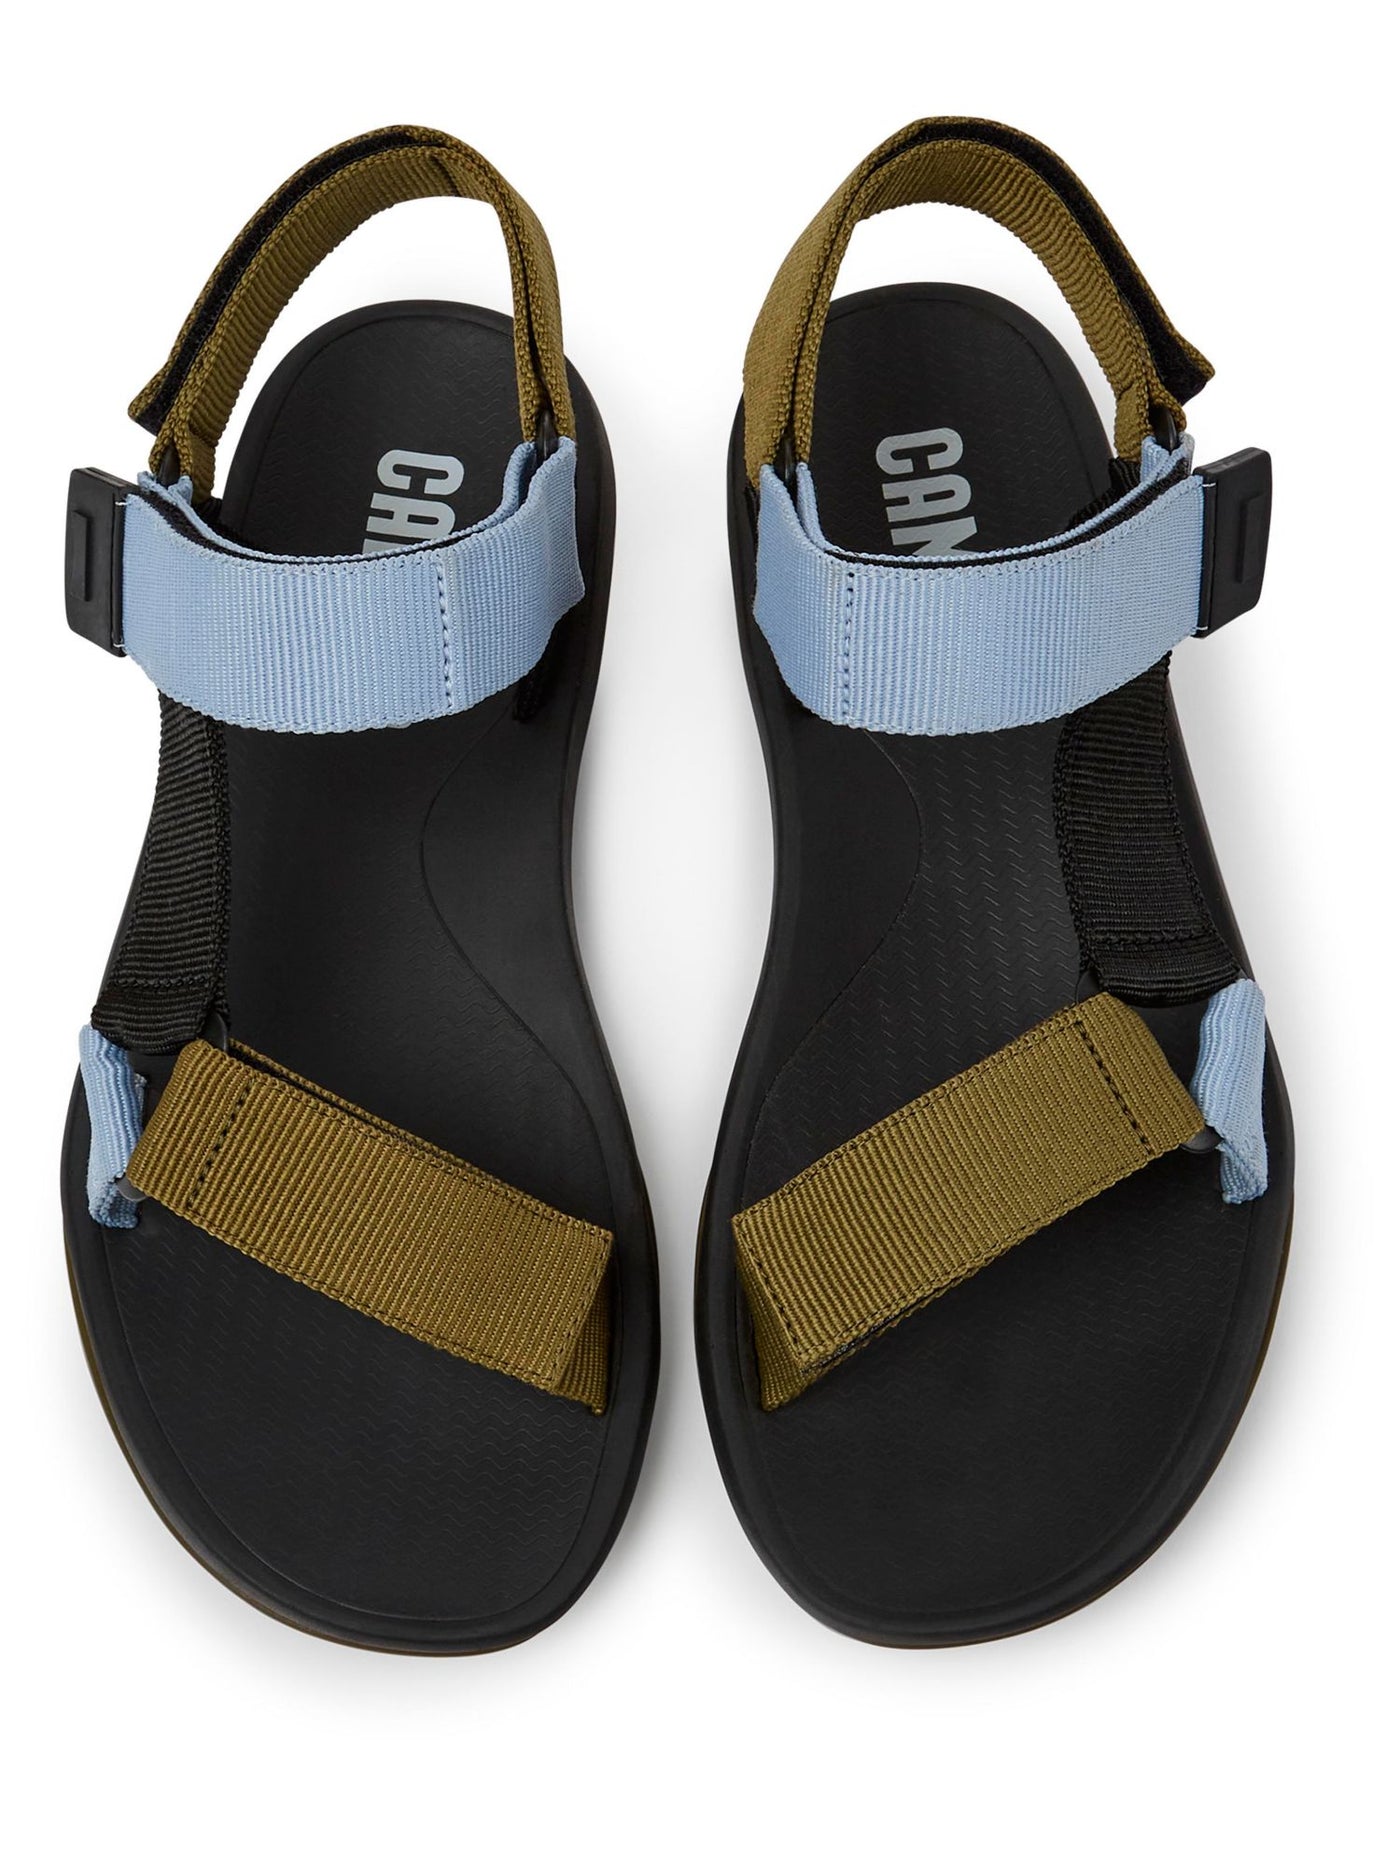 CAMPER Mens Green Color Block T-Strap Comfort Match Open Toe Sandals Shoes 46